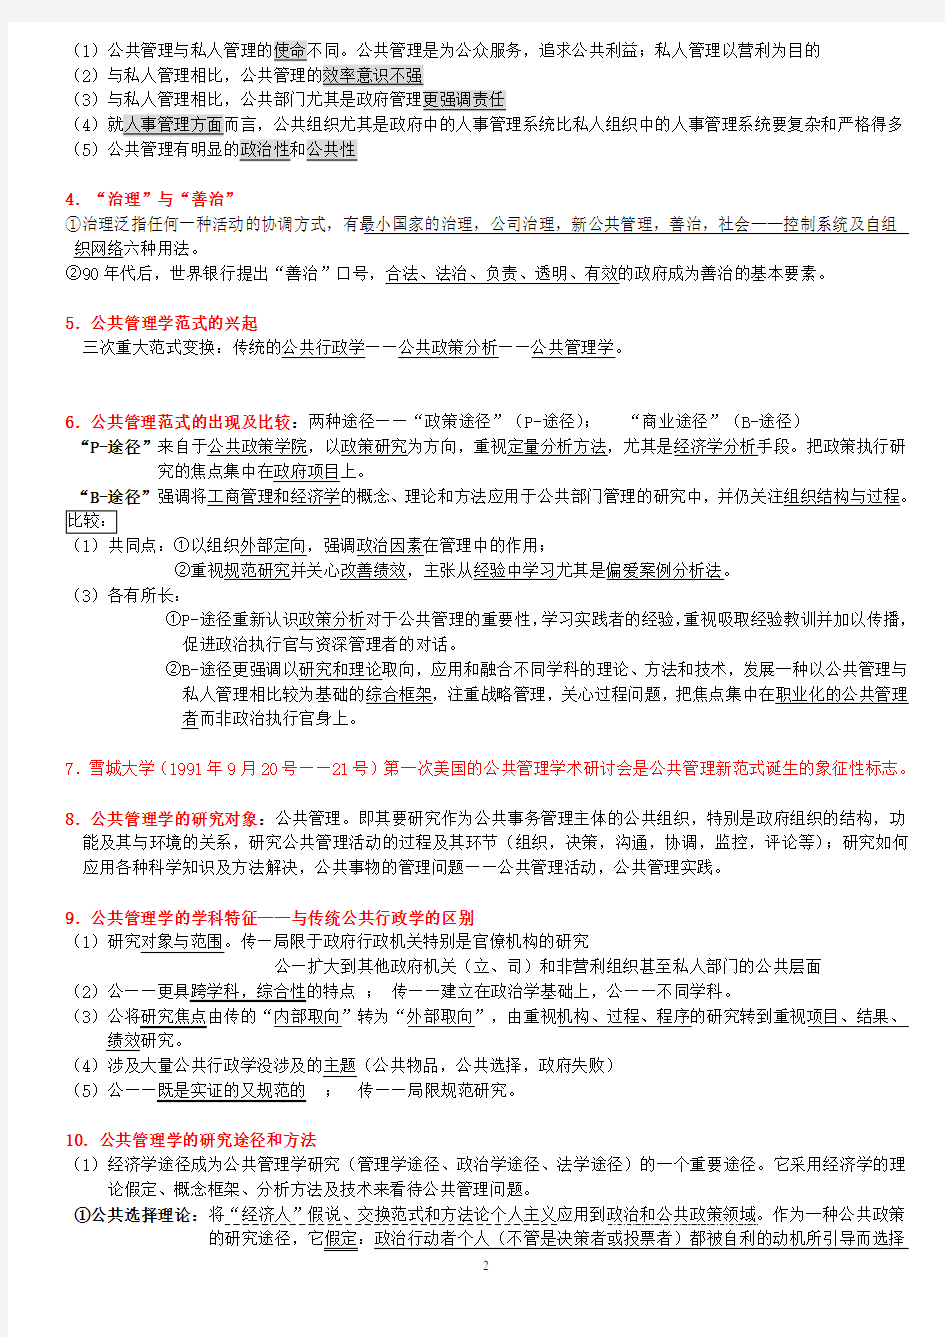 (必备)陈振明公共管理学考研笔记110